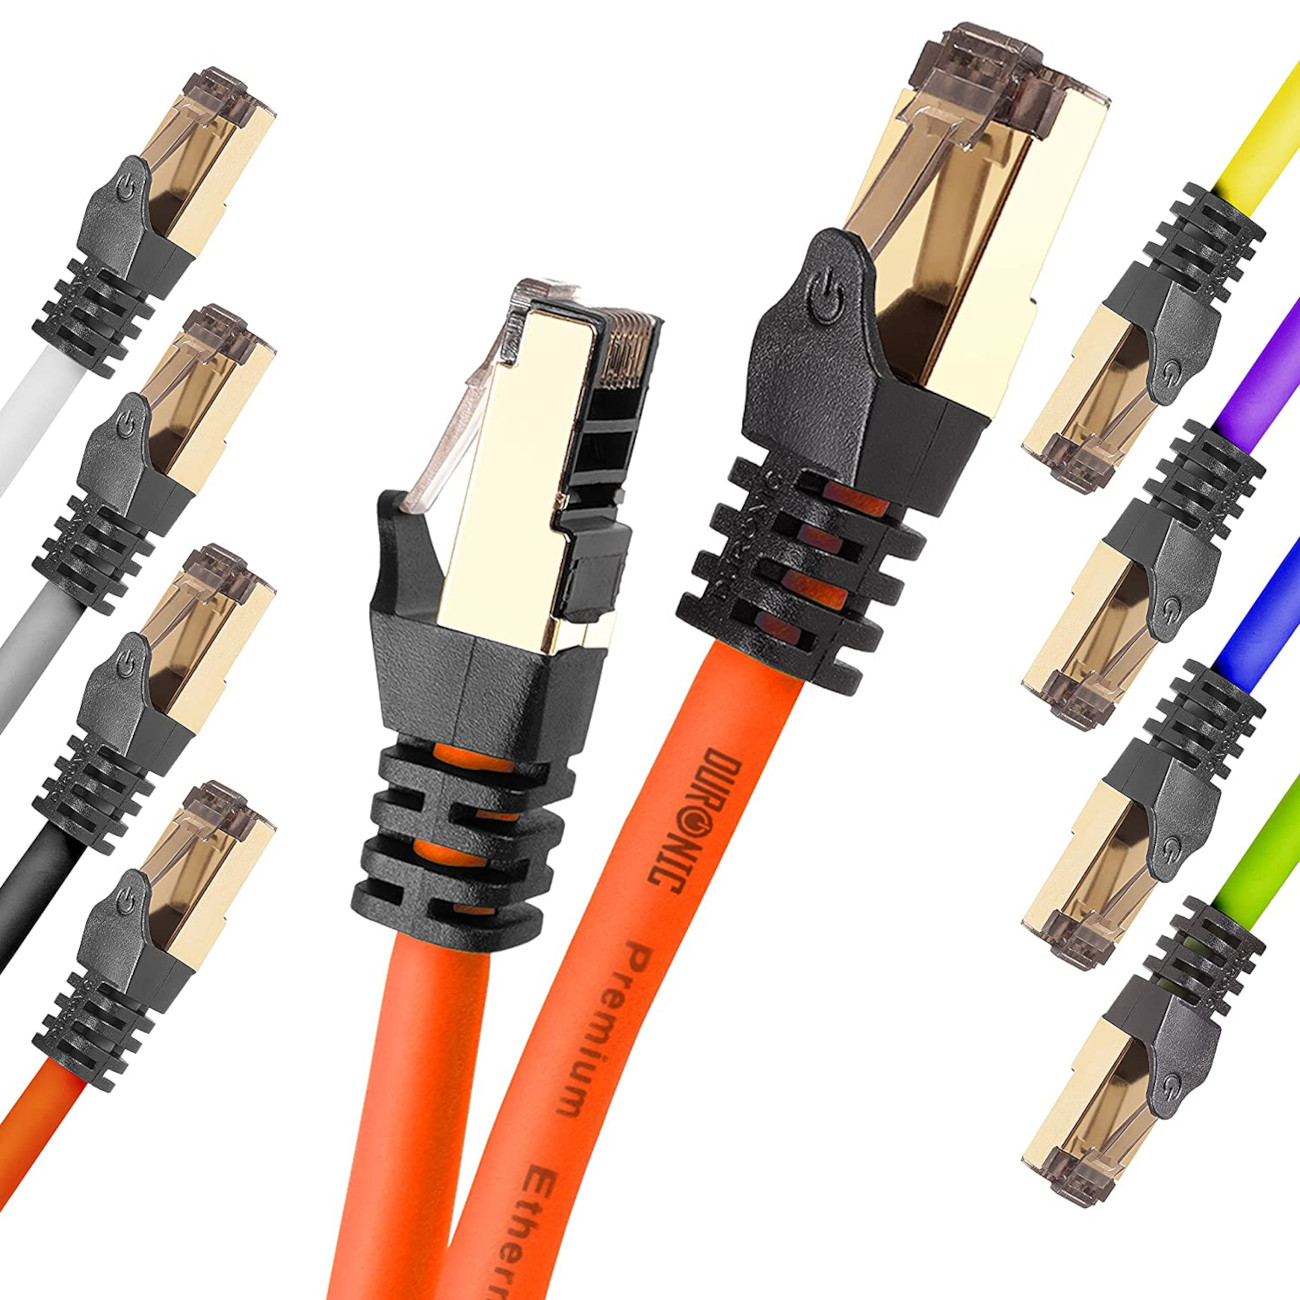 | | Konsole, MB/s m Netzwerkkabel, DURONIC Lankabel Ethernetkabel | für 3m und RJ45 Router CAT8 3 Patchkabel OE 5.000